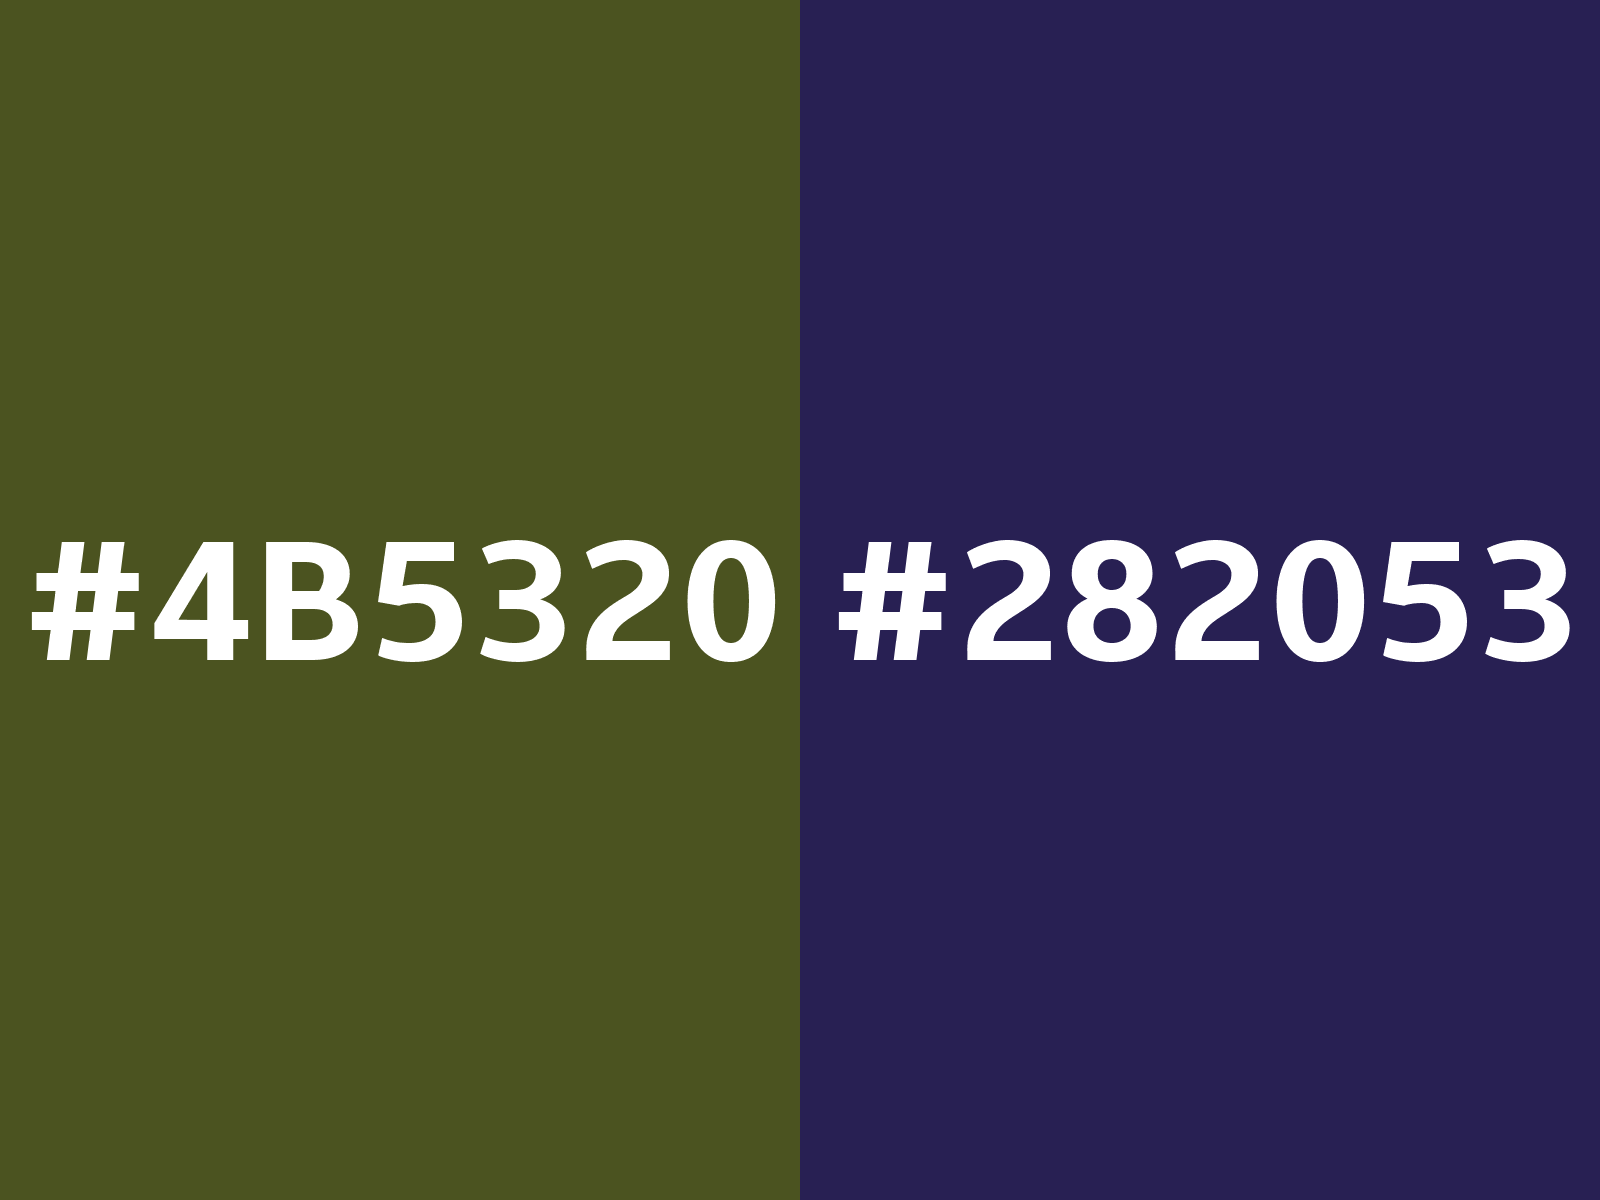 CIL army fatigue green - #7e896c color code hexadecimal - 30GY 23/167